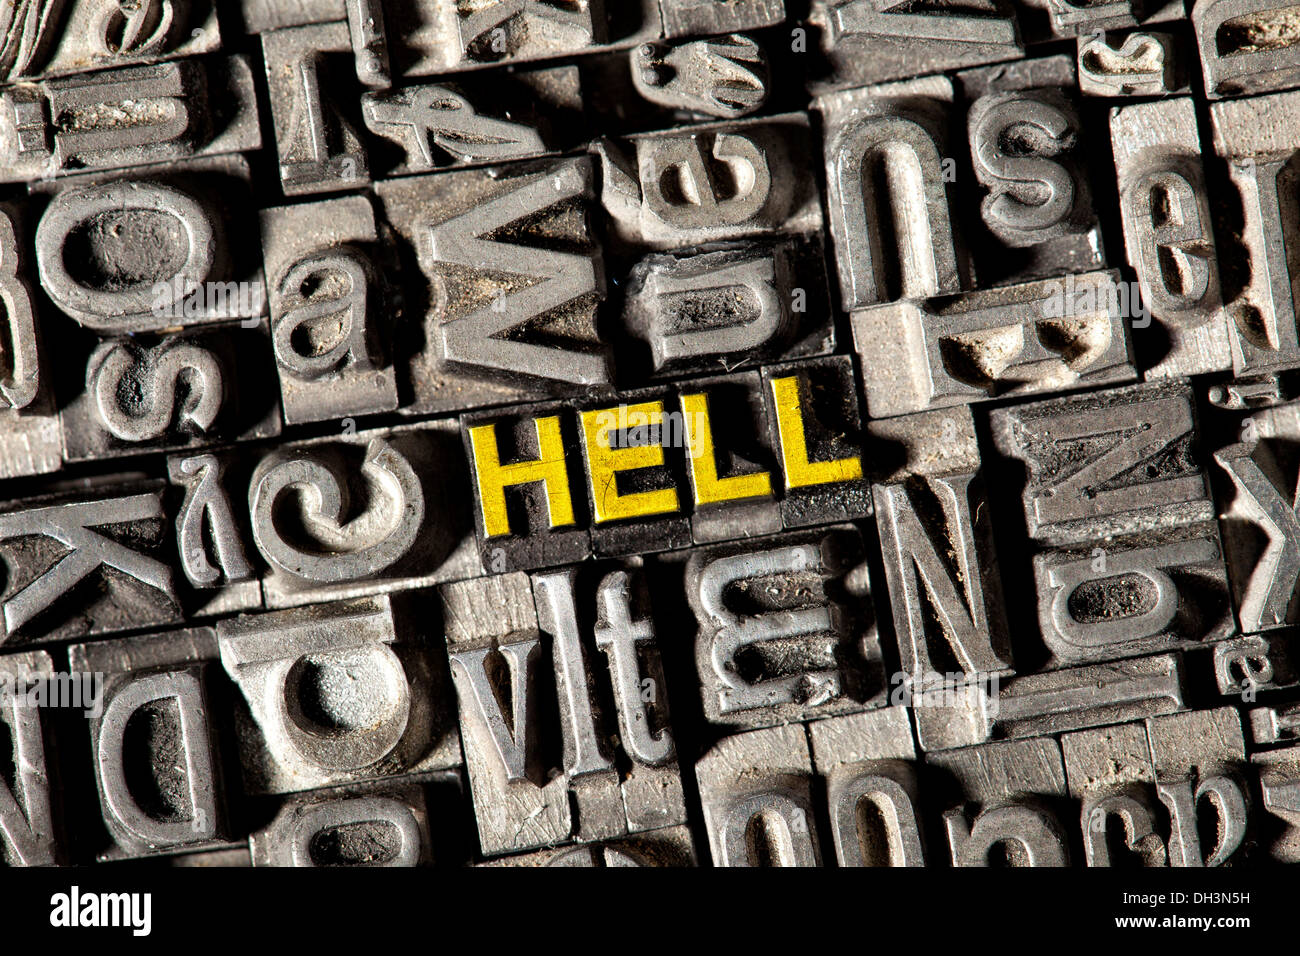 Vecchio portano lettere che compongono la parola "Hell" Foto Stock